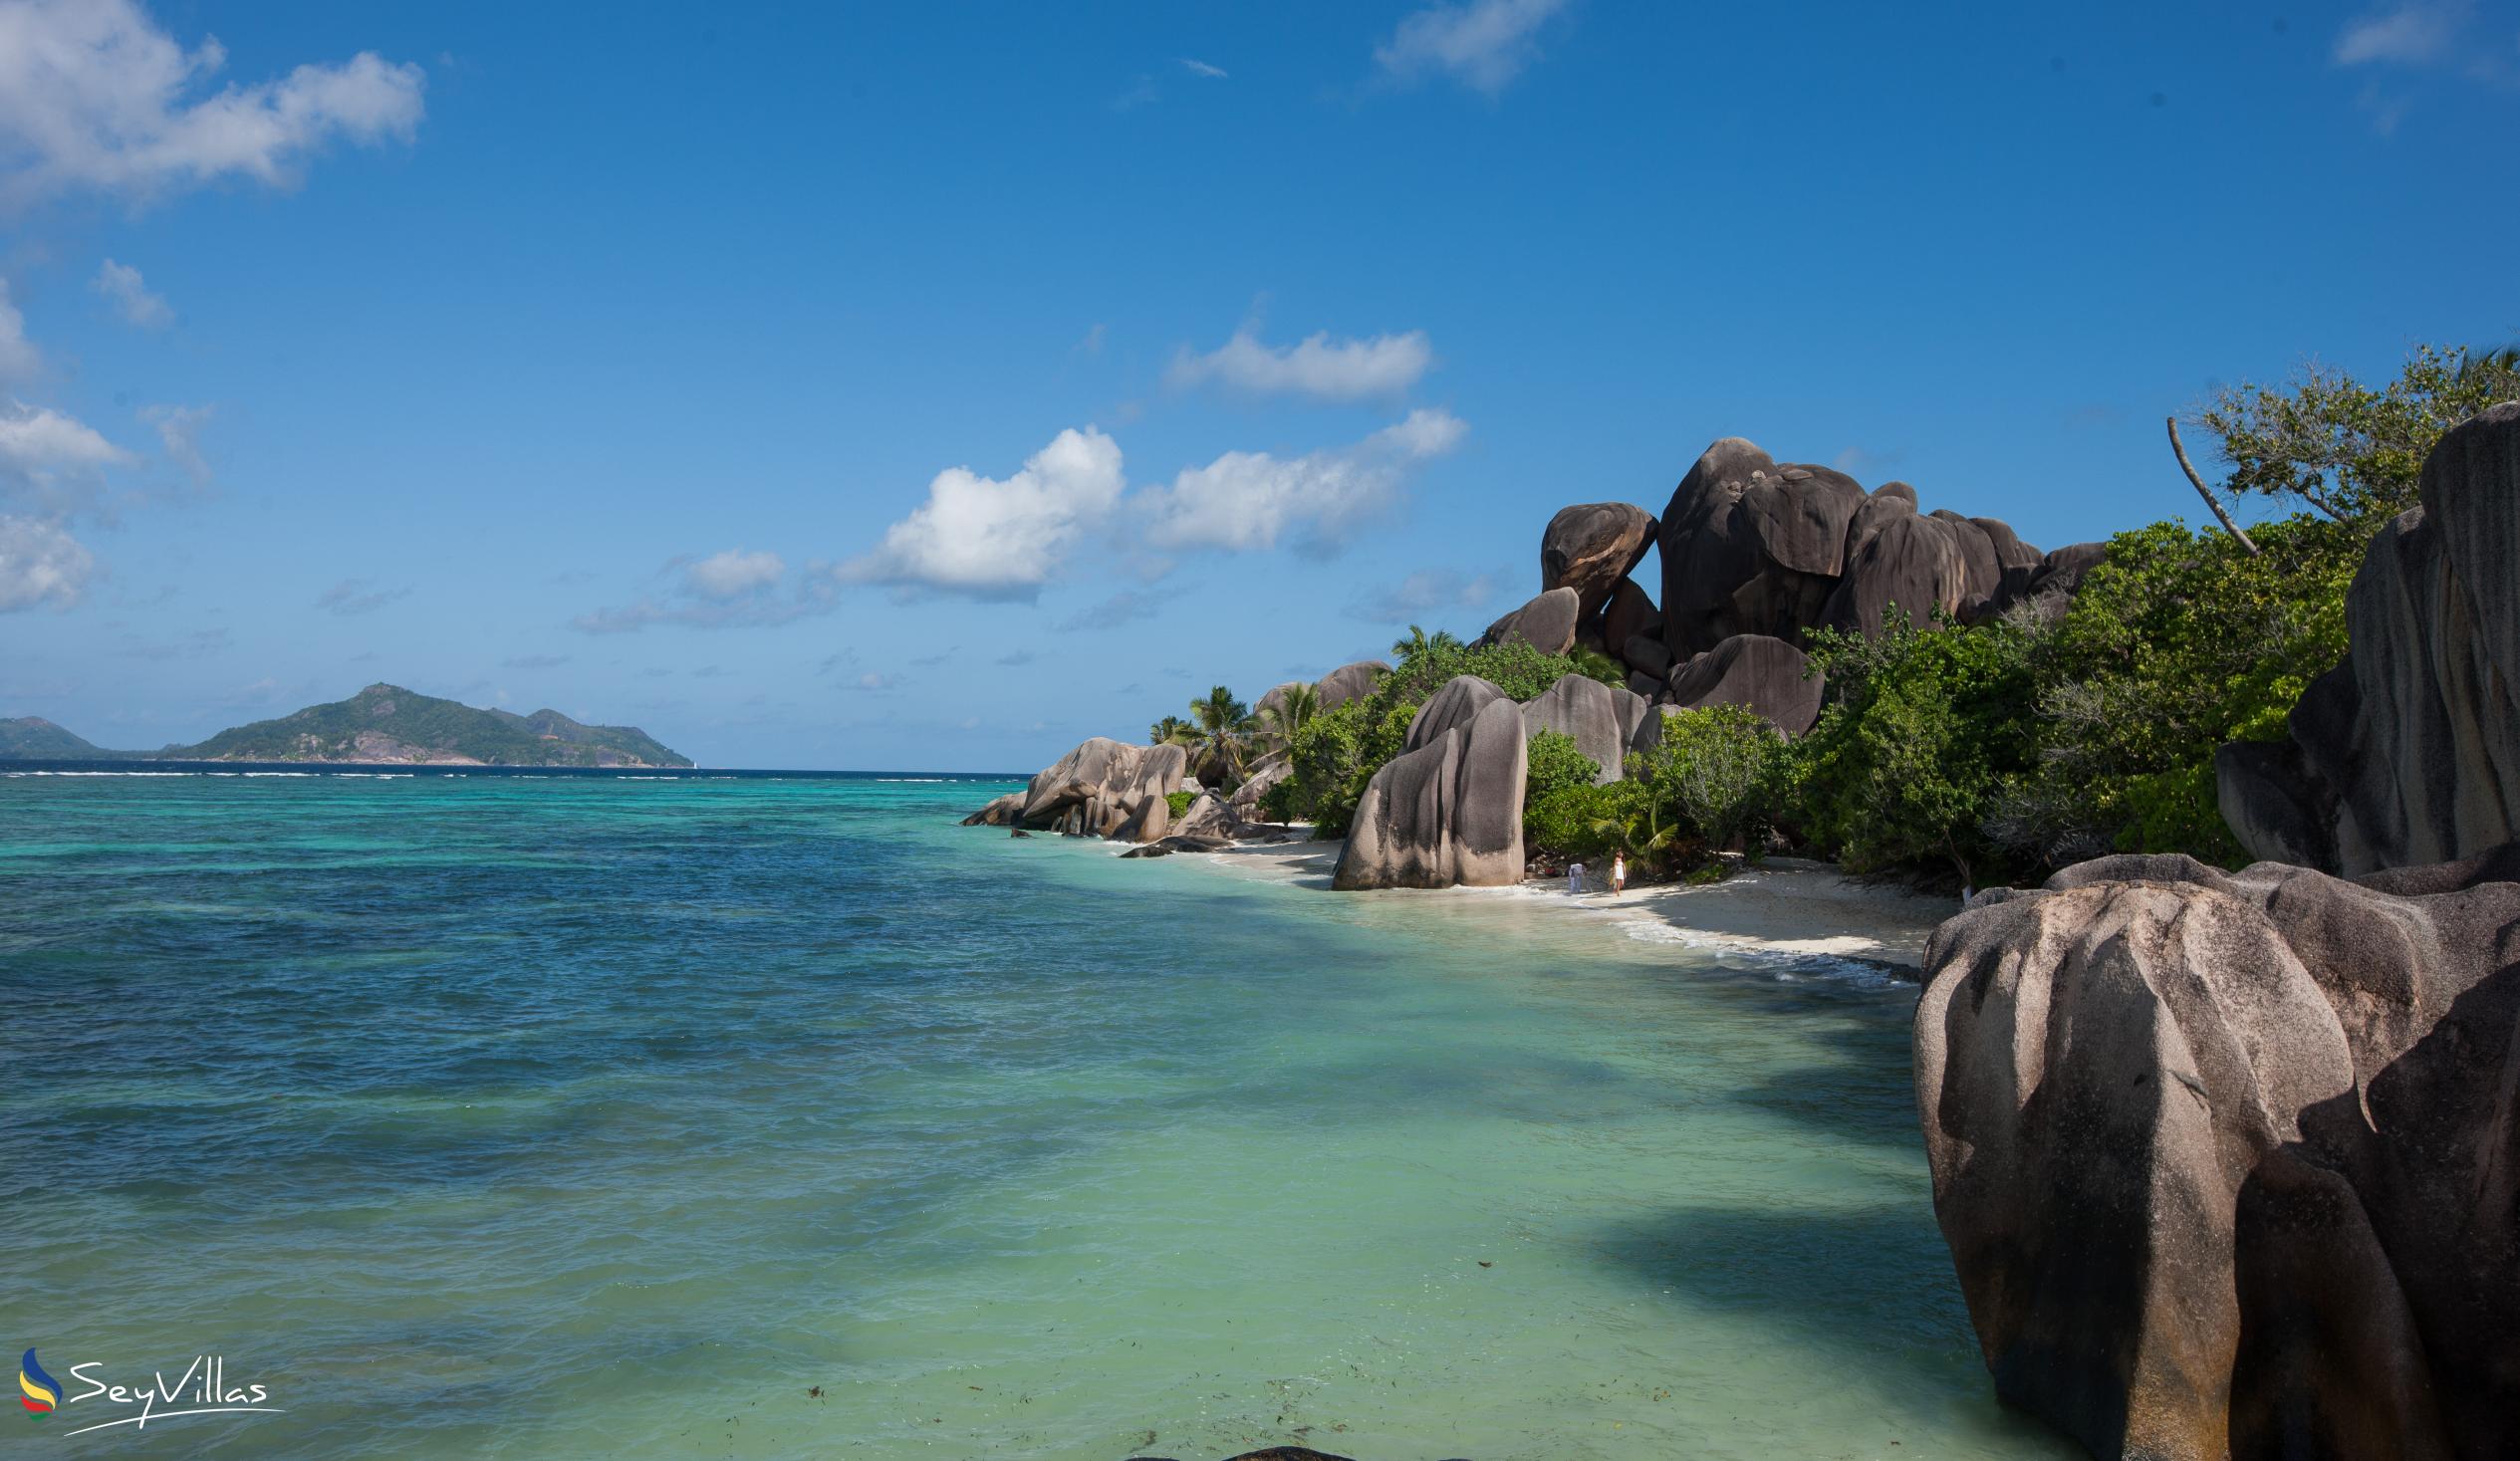 Photo 43: Pension Fidele - Beaches - La Digue (Seychelles)